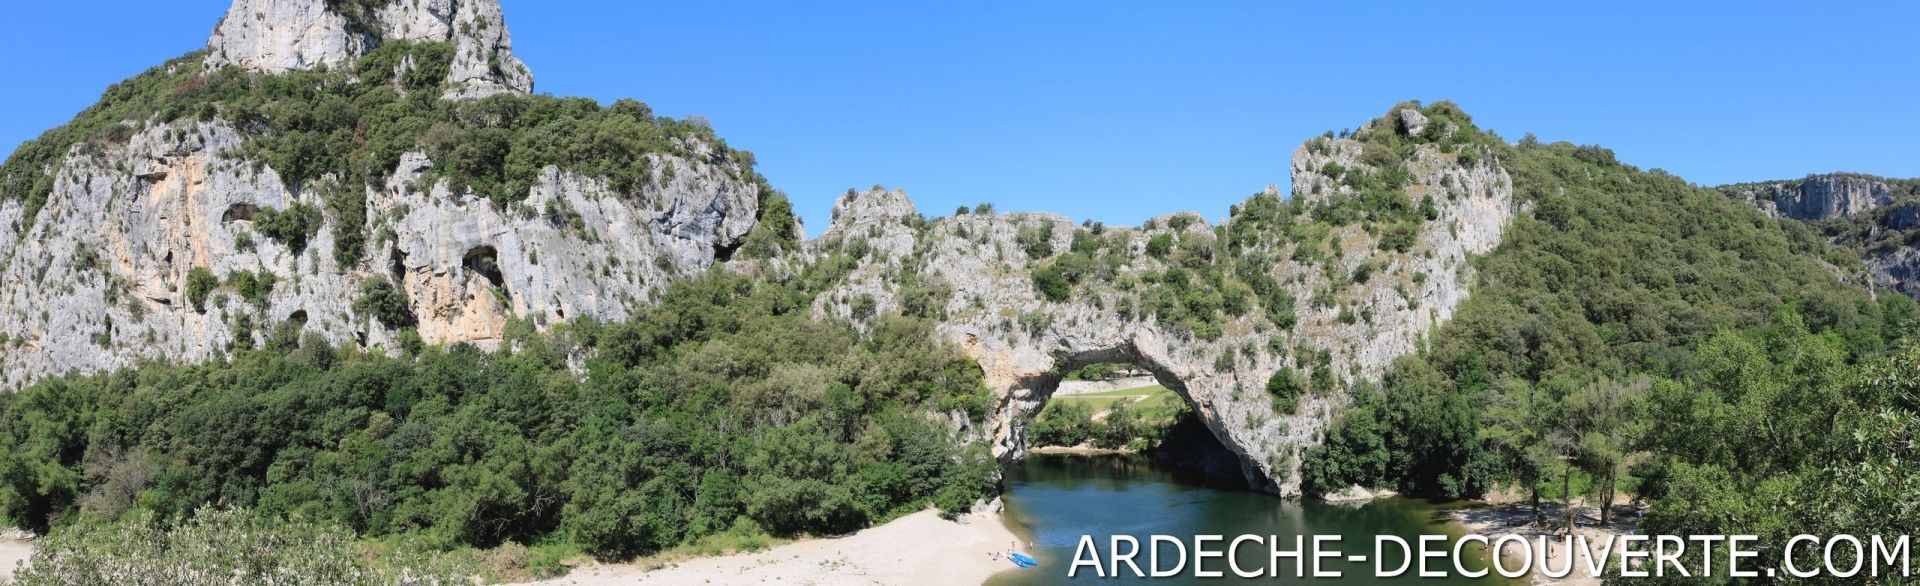 Pont d'Arc Ardèche